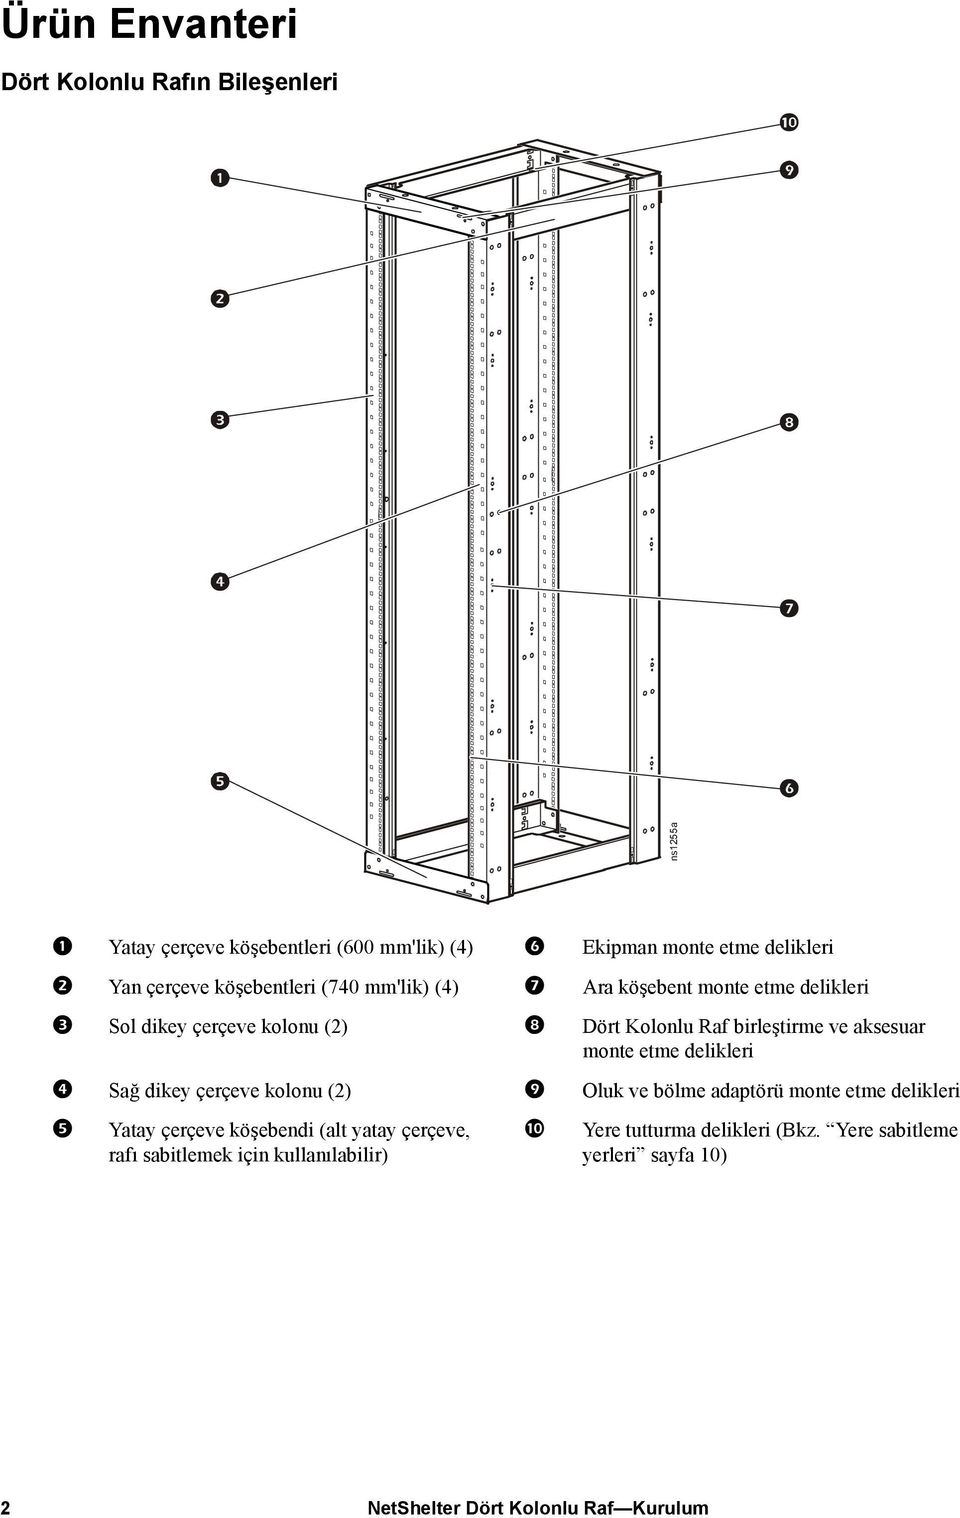 birleştirme ve aksesuar monte etme delikleri Sağ dikey çerçeve kolonu (2) Oluk ve bölme adaptörü monte etme delikleri Yatay